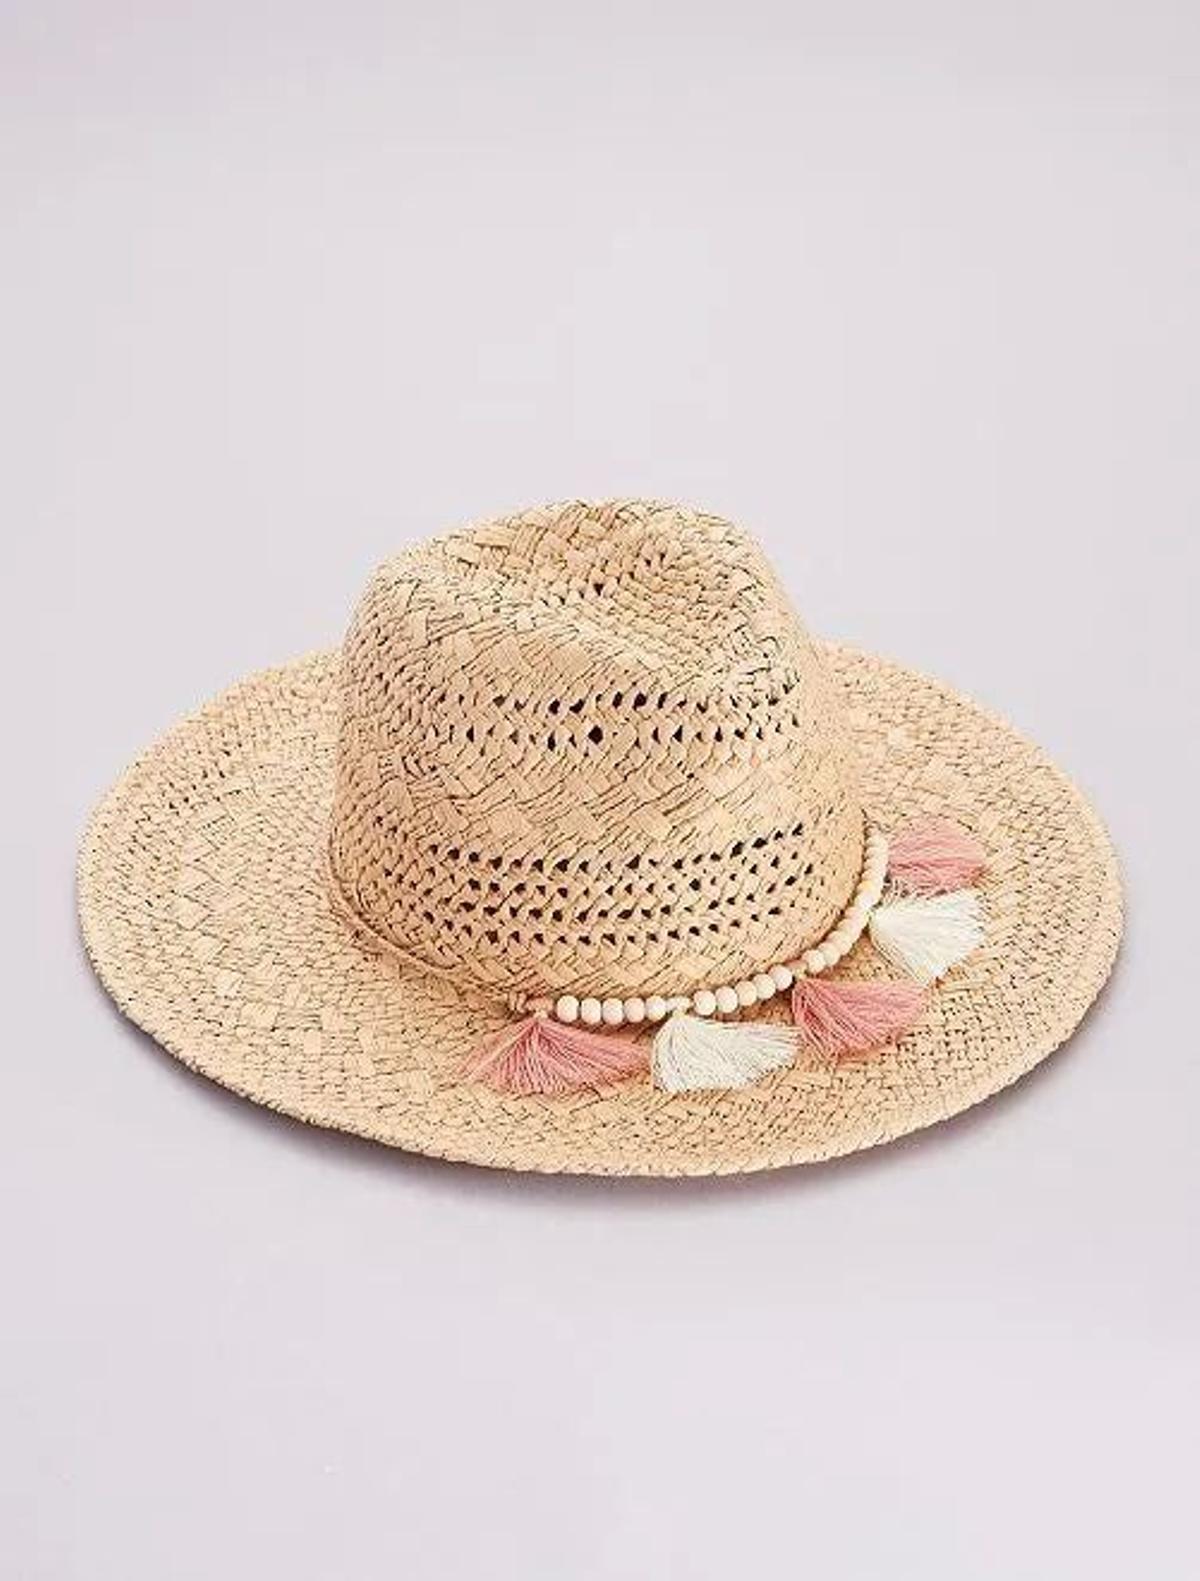 Sombrero de Kiabi (Precio: 10 euros)